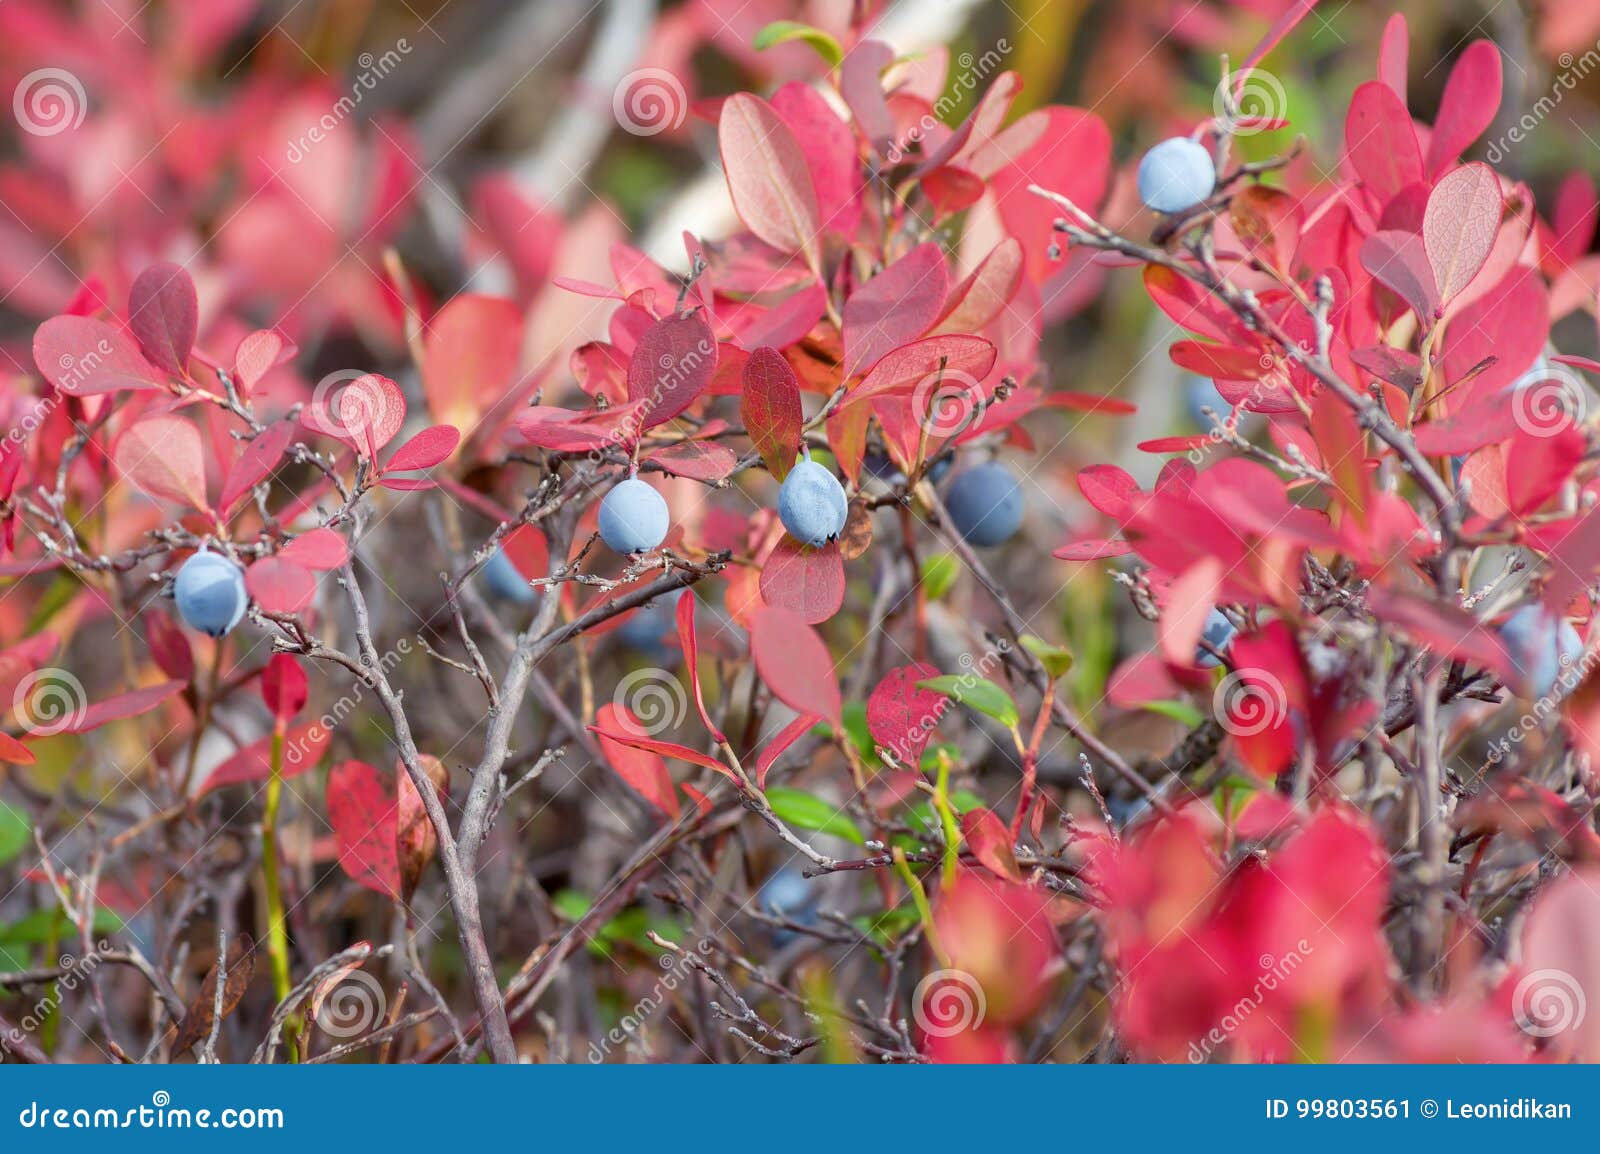 Краснеет голубика. Голубика Садовая красная листва. Голубика Садовая осенью красные листья. Красные листья у голубики. Голубика с красными листьями осенью.